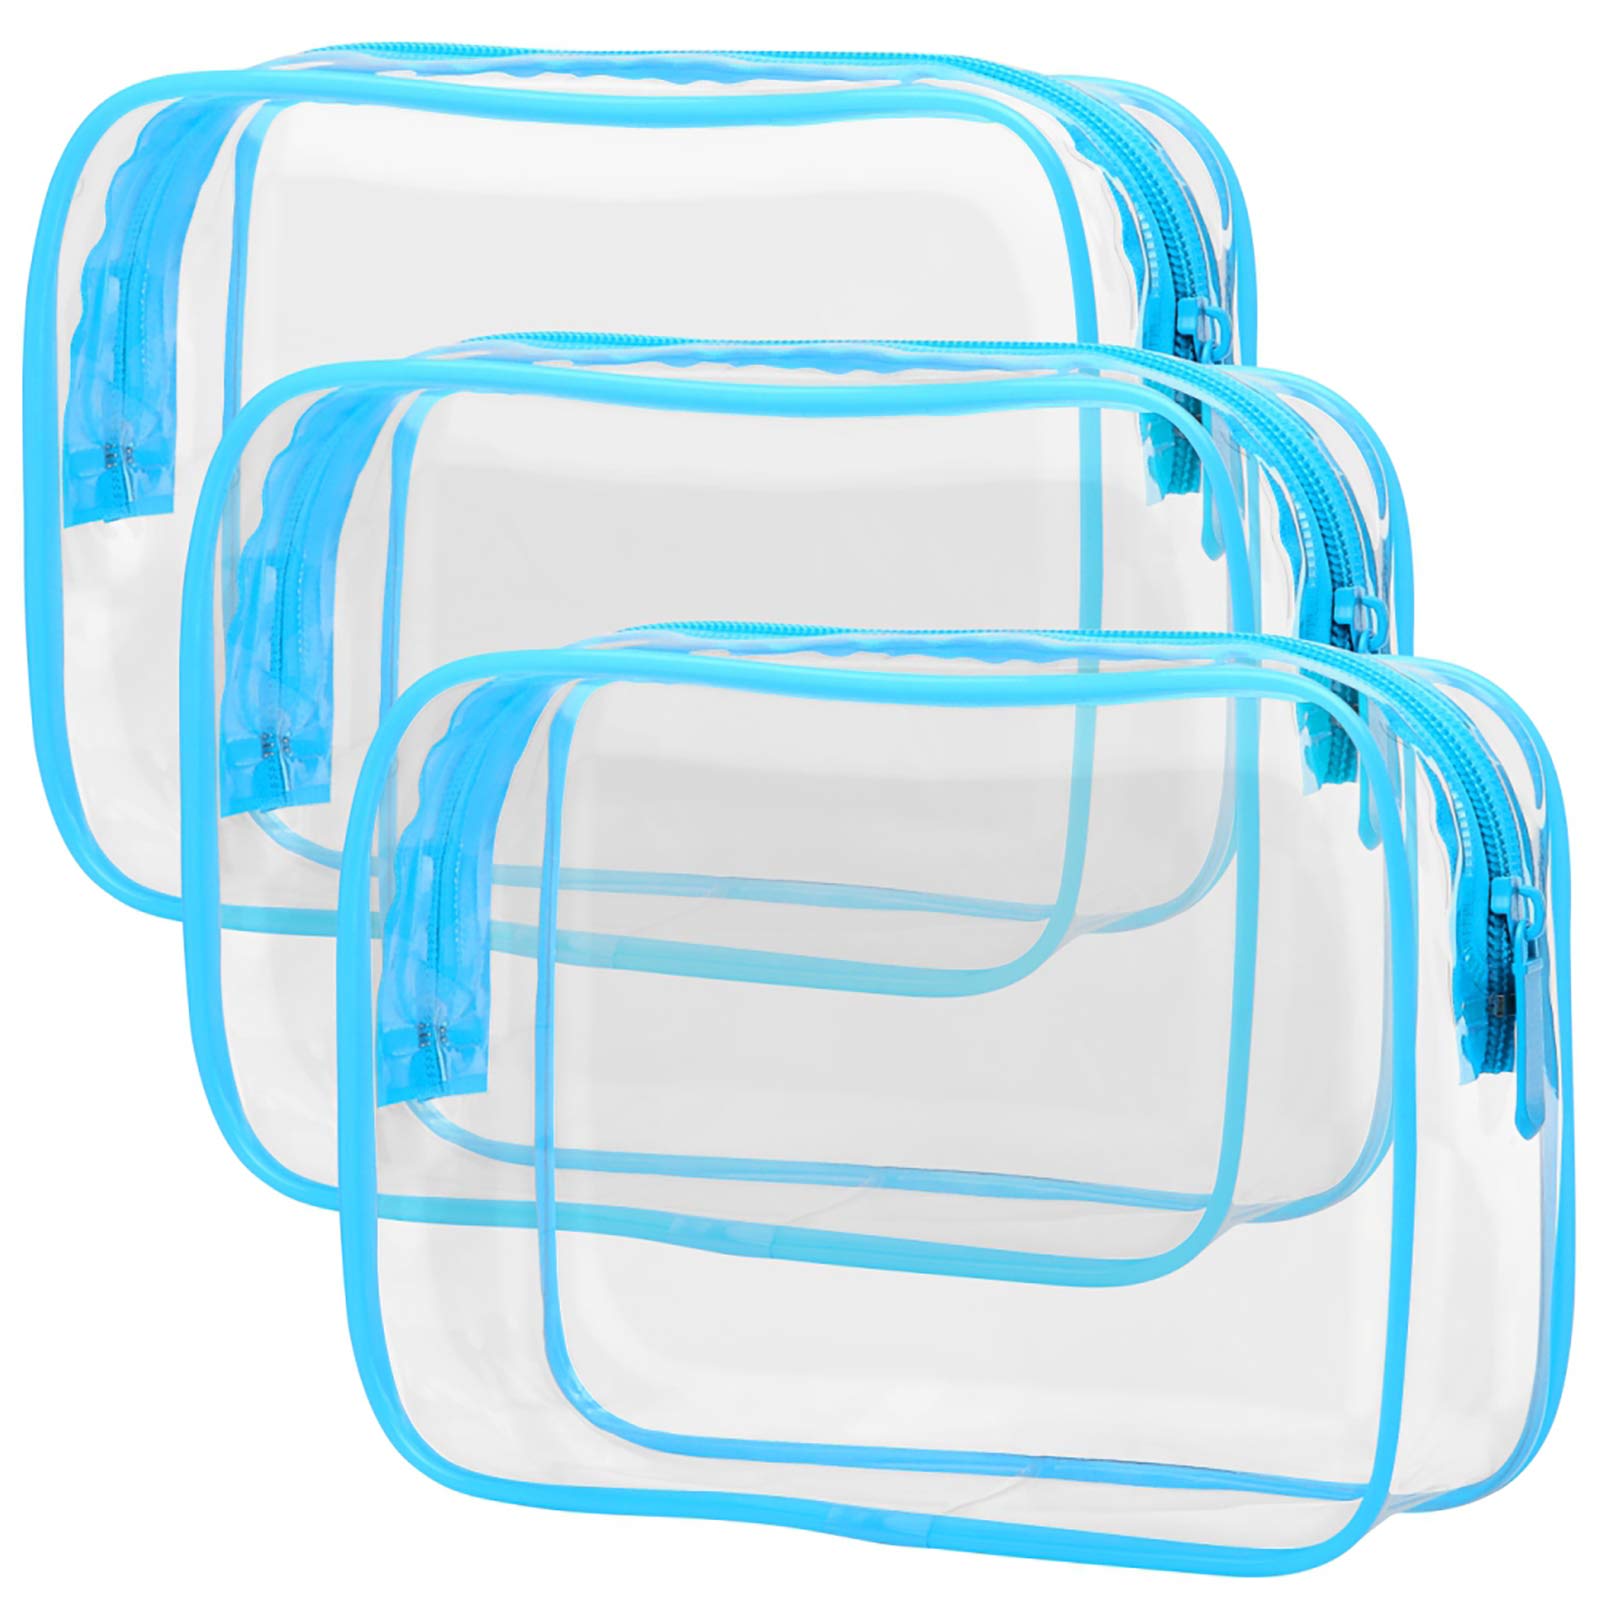 Transparent wash bag set for family